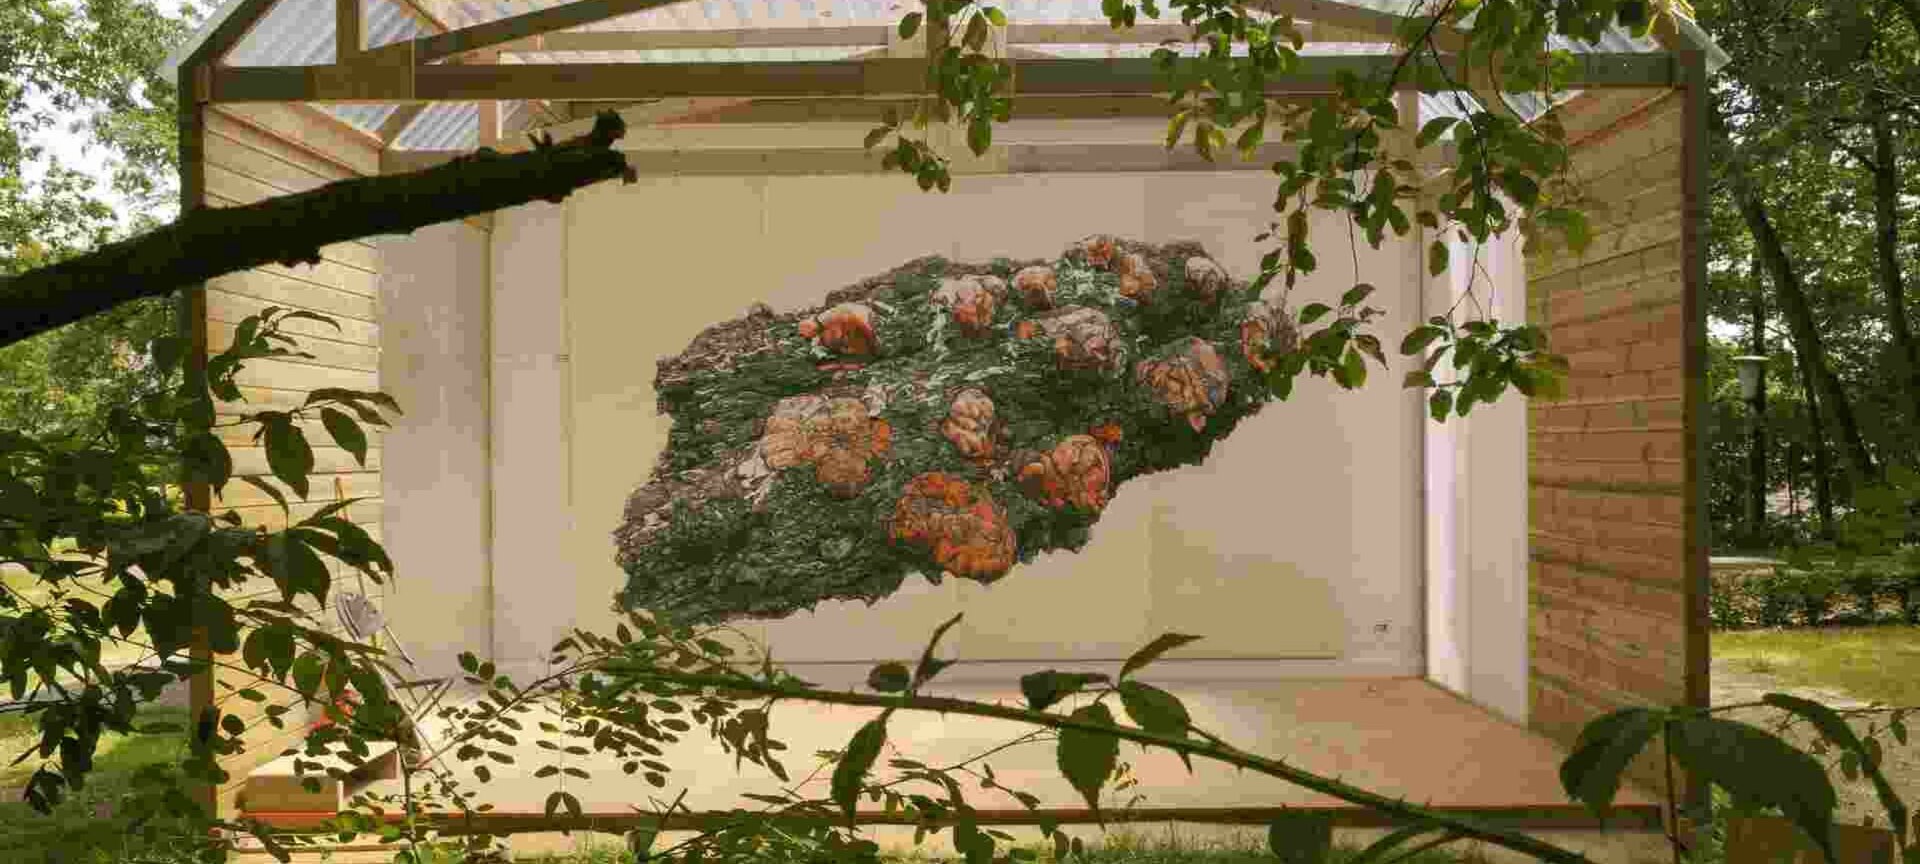 Emile Van Dorenmuseum: Huis van landschap en kunst - Erik Odijk - "A meteorite named Erica"